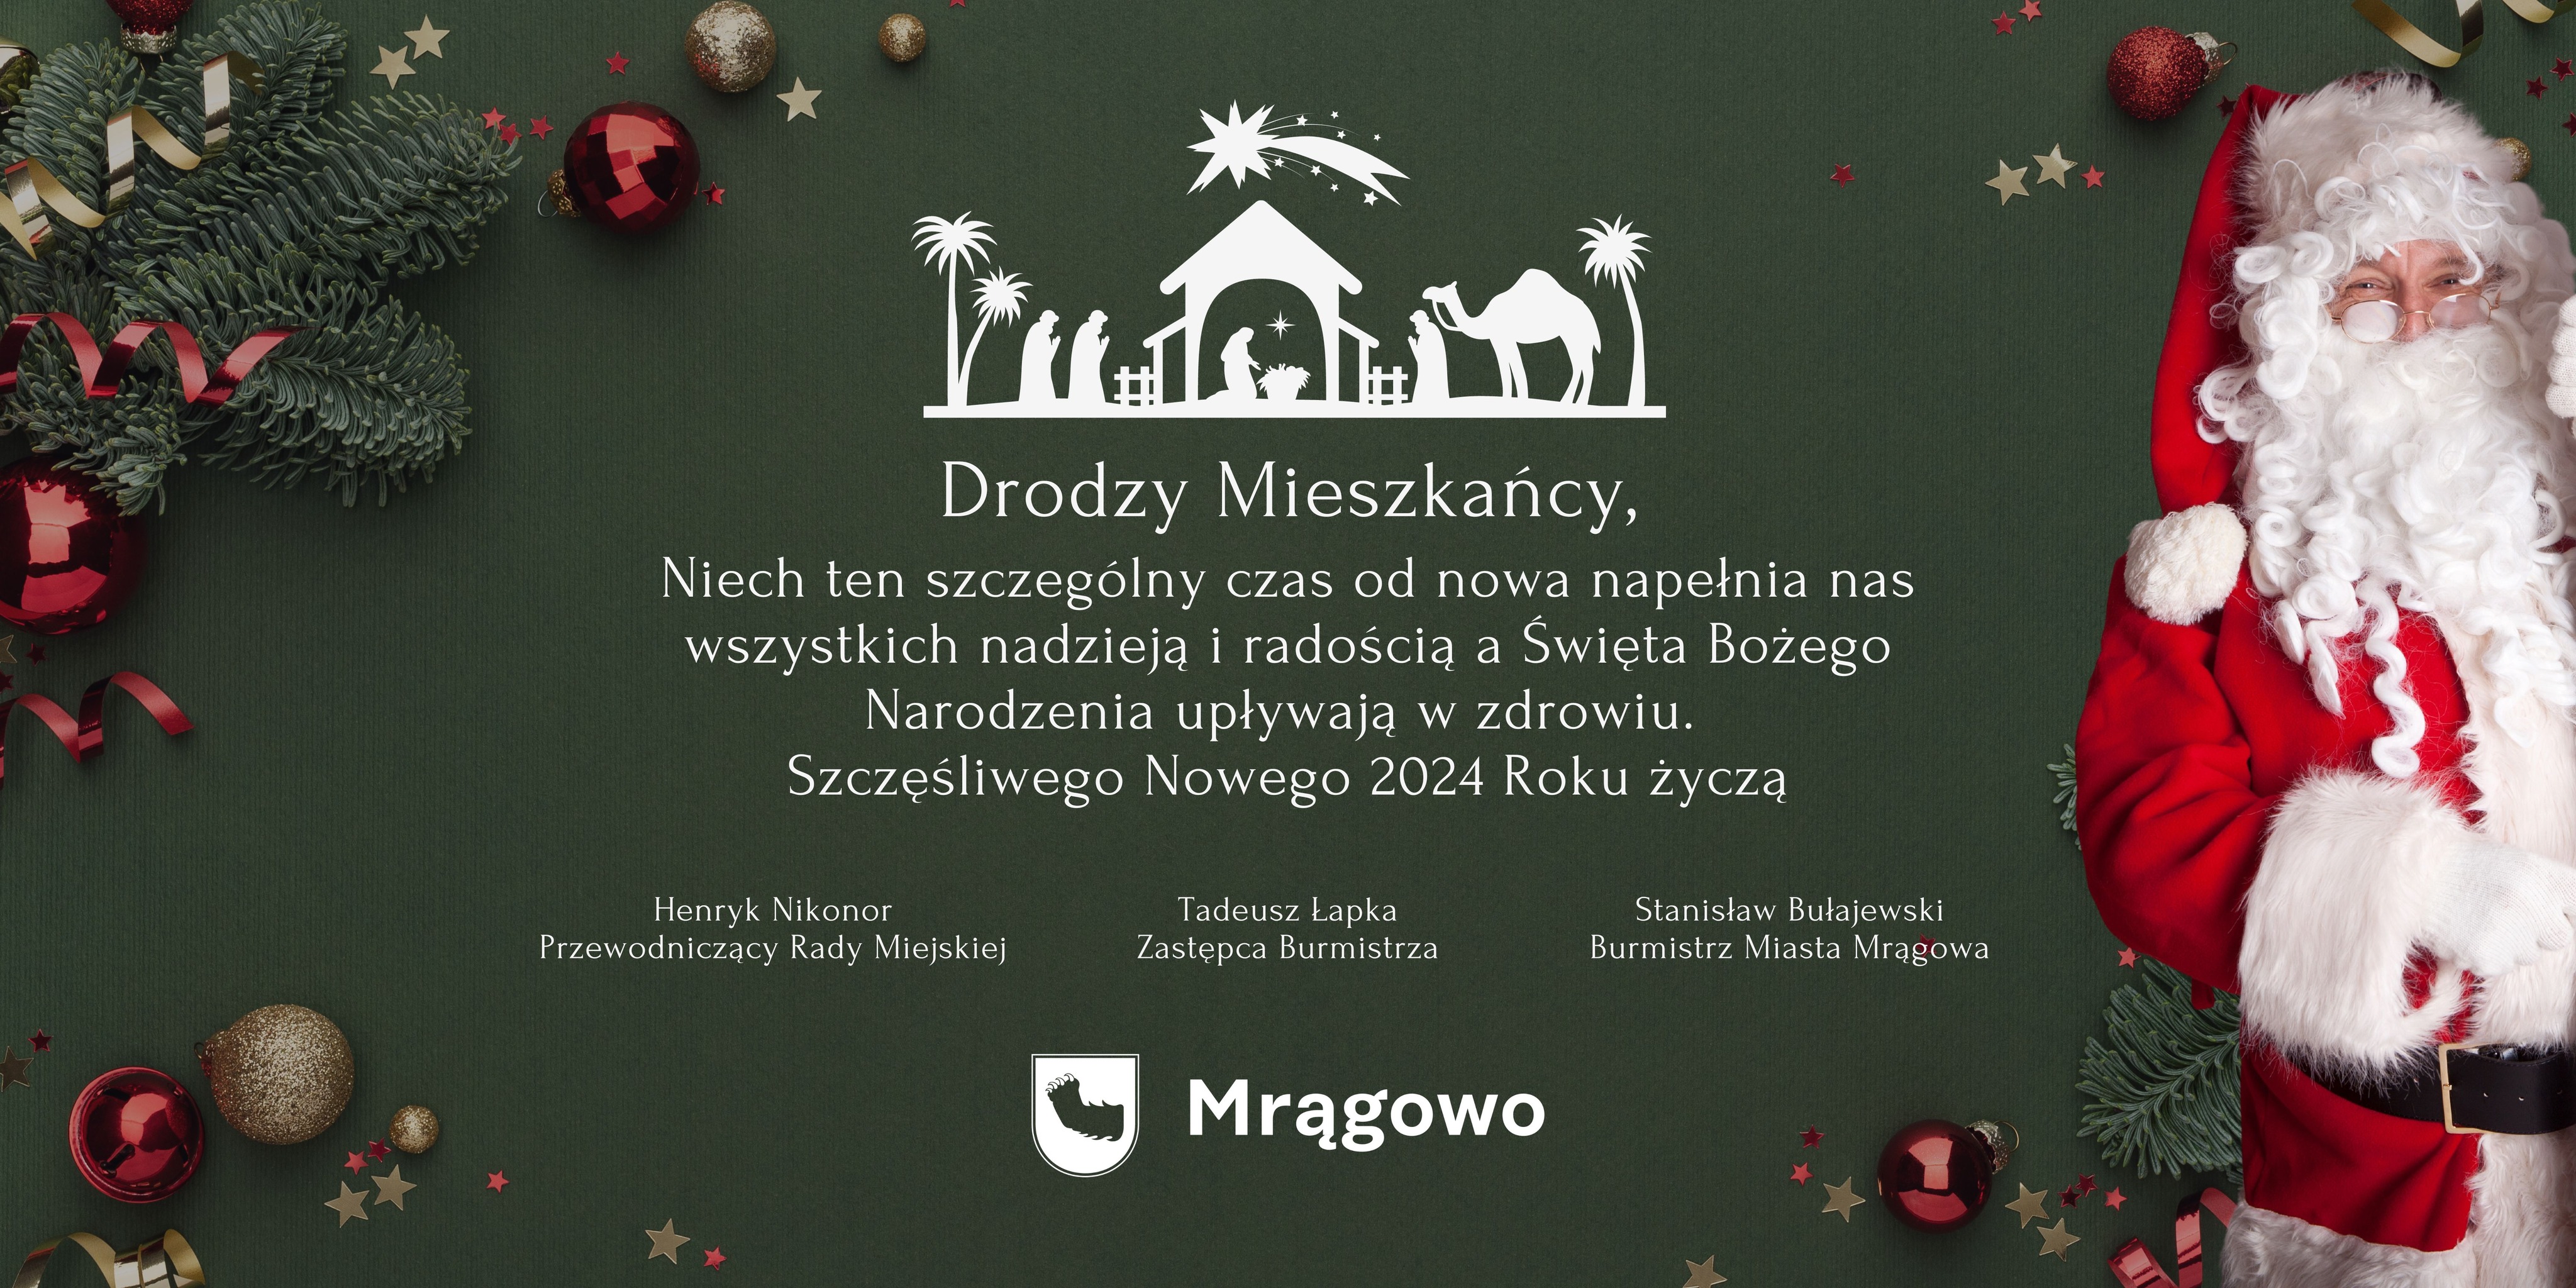 Obraz artykułu - Bożonarodzeniowe i noworoczne życzenia od władz Mrągowa